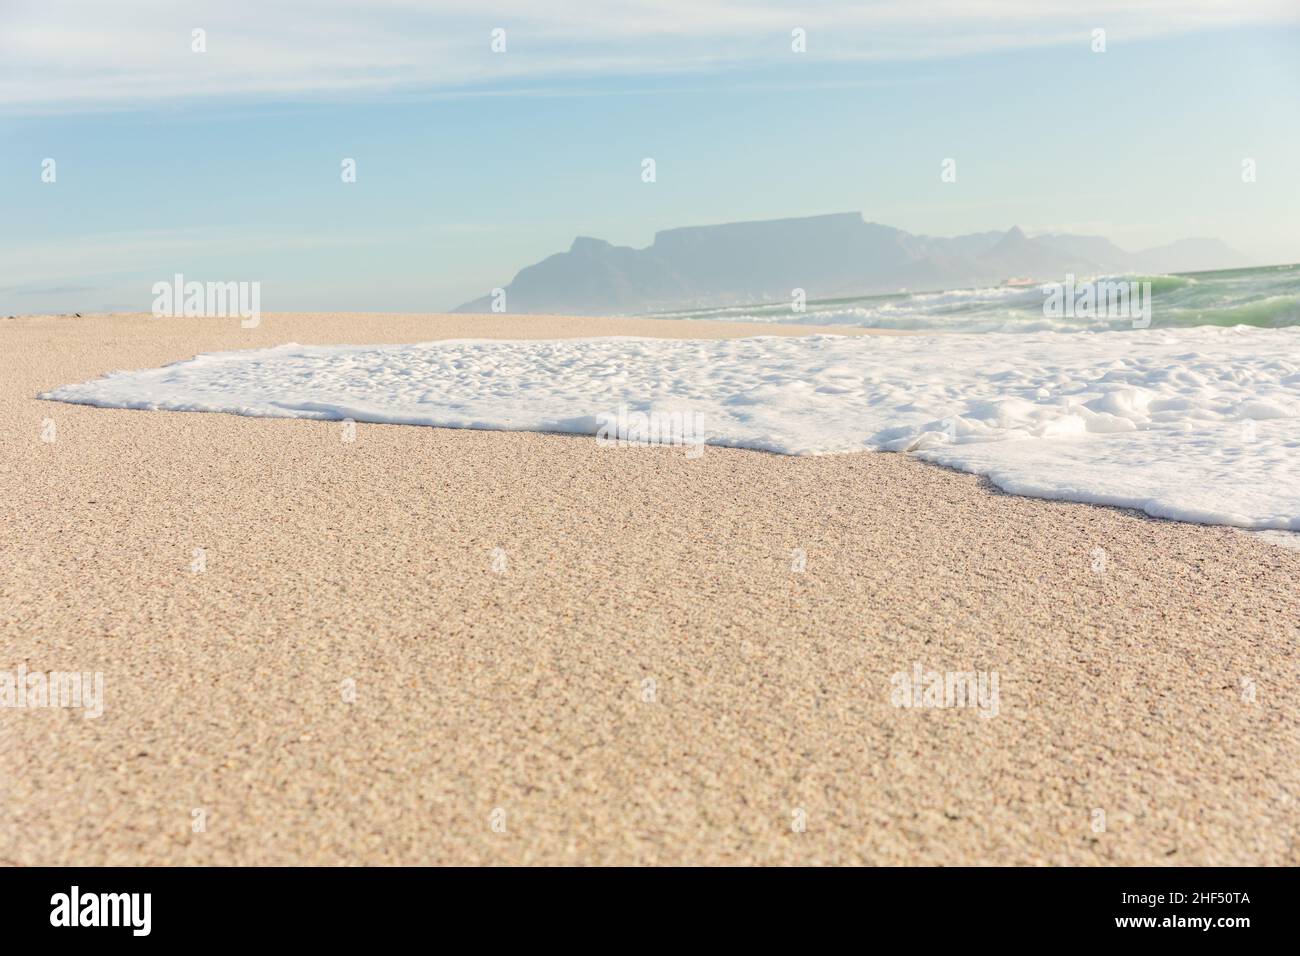 Schiuma d'onda di mare sulla riva a spiaggia soleggiata con montagne sullo sfondo distante Foto Stock